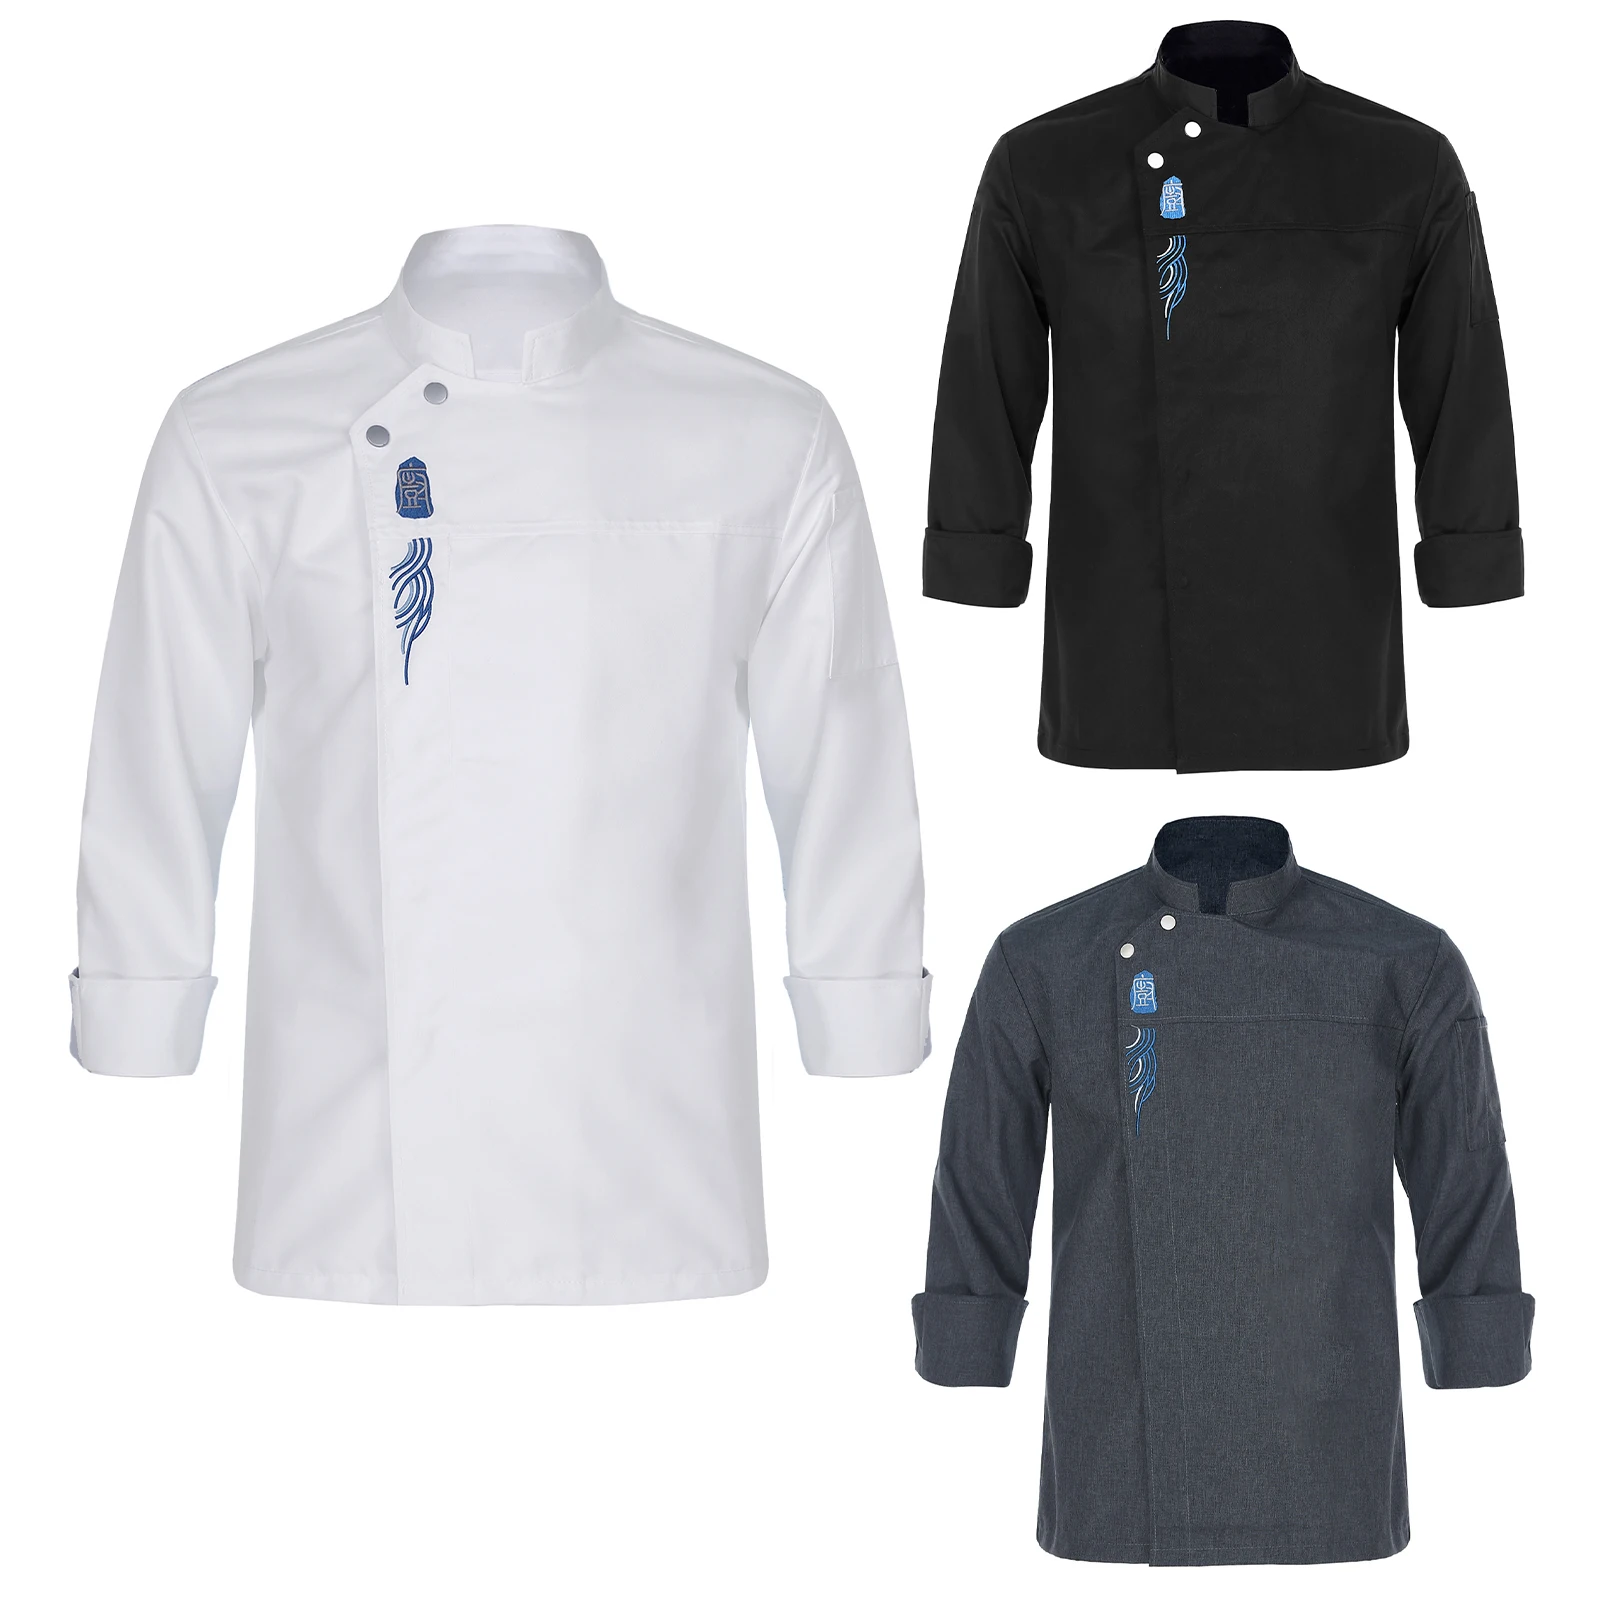 Chaqueta de Chef bordada Unisex para hombre y mujer, abrigo de manga larga con cuello levantado, para restaurante, cocina, Catering, Hotel, uniforme superior